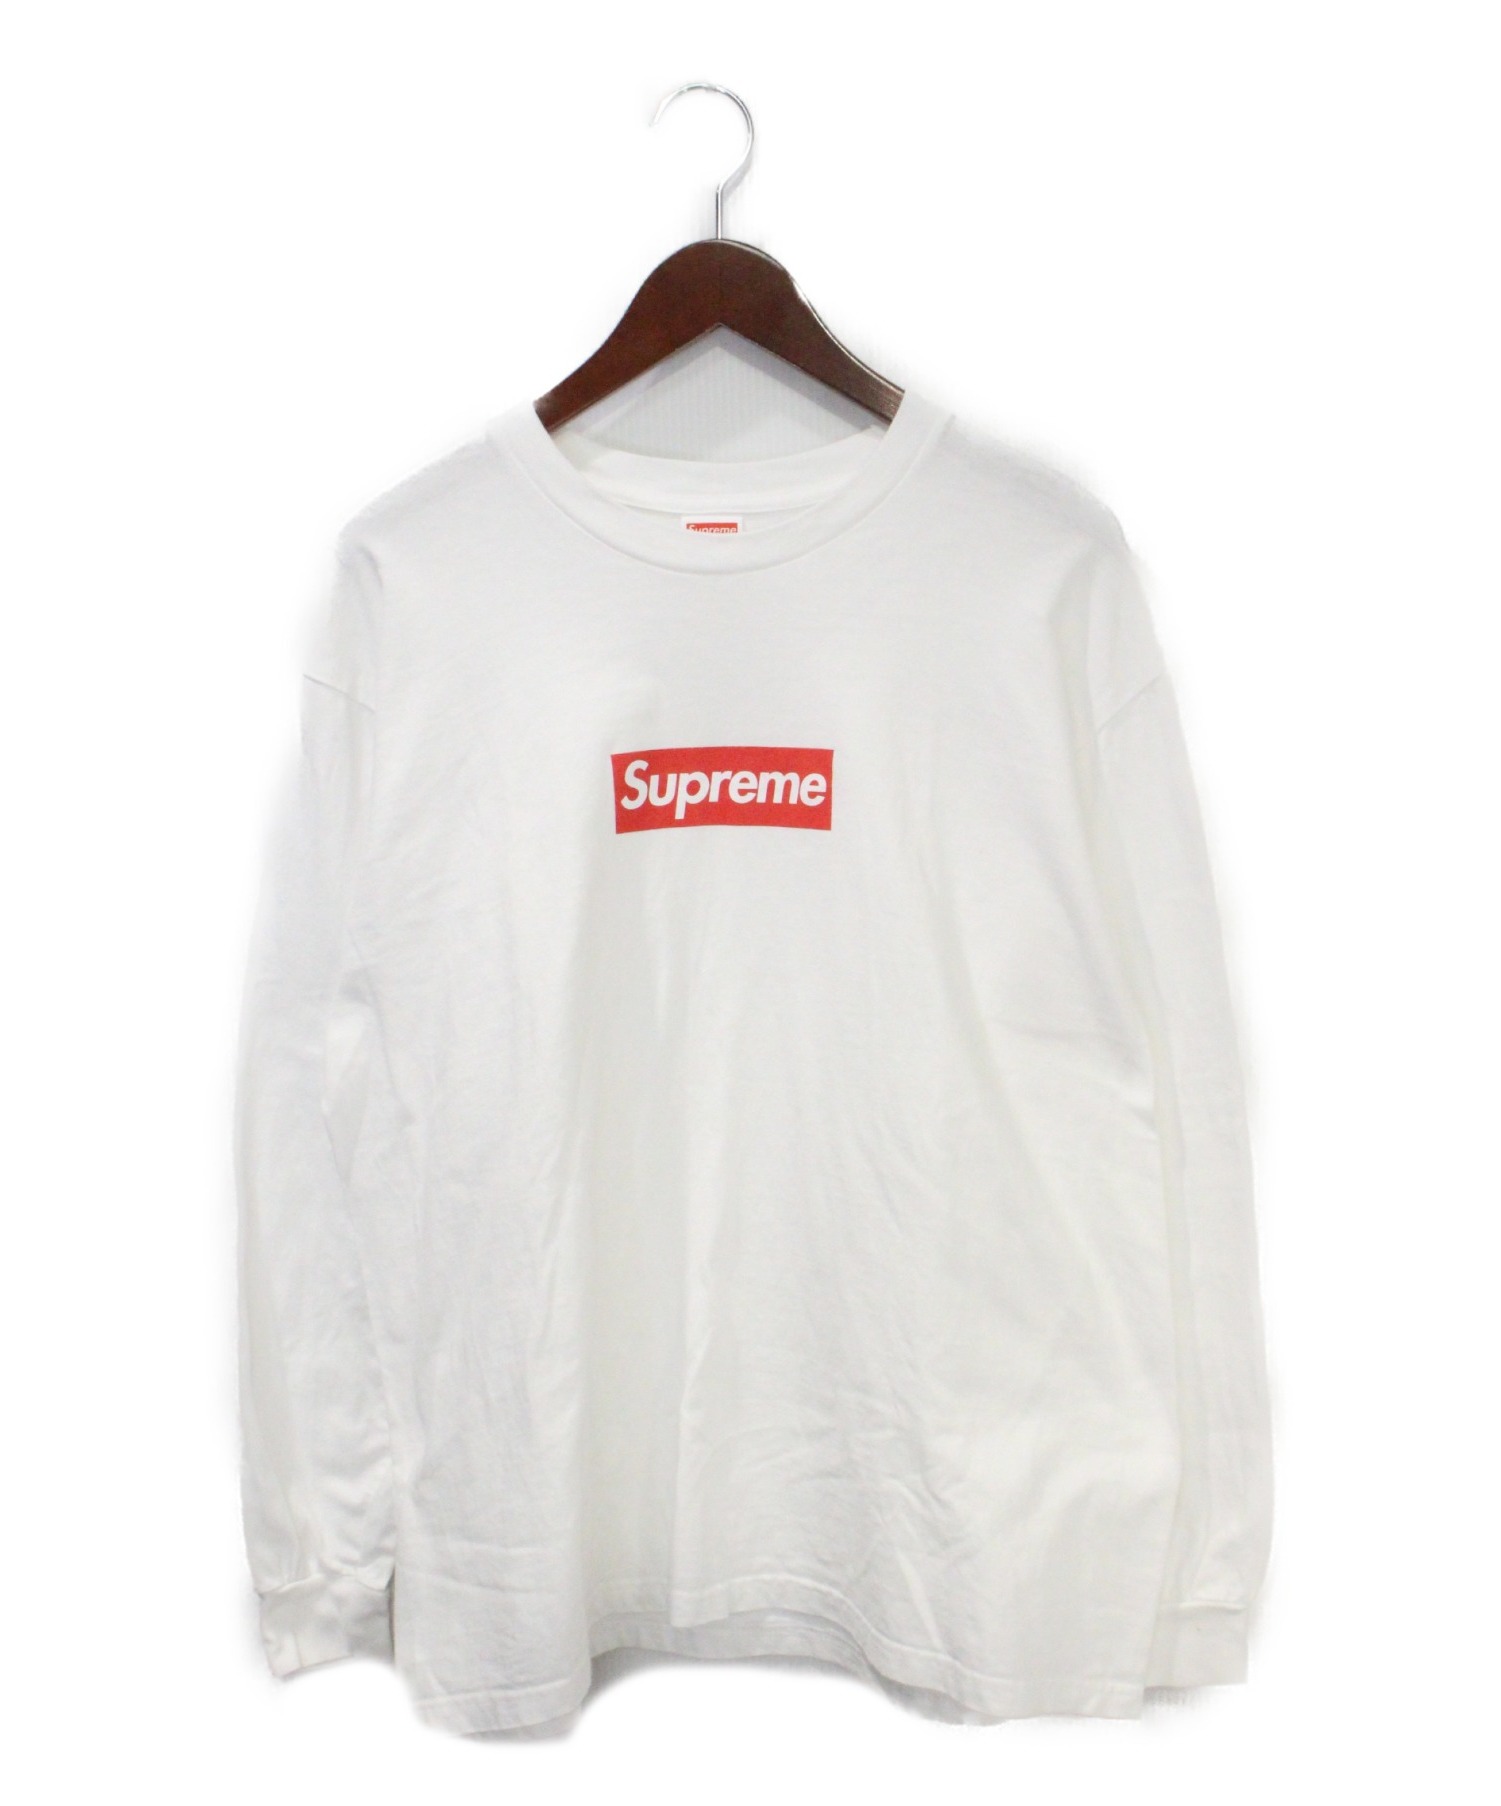 ブランド Supreme ロングTシャツの通販 by machooo1112's shop